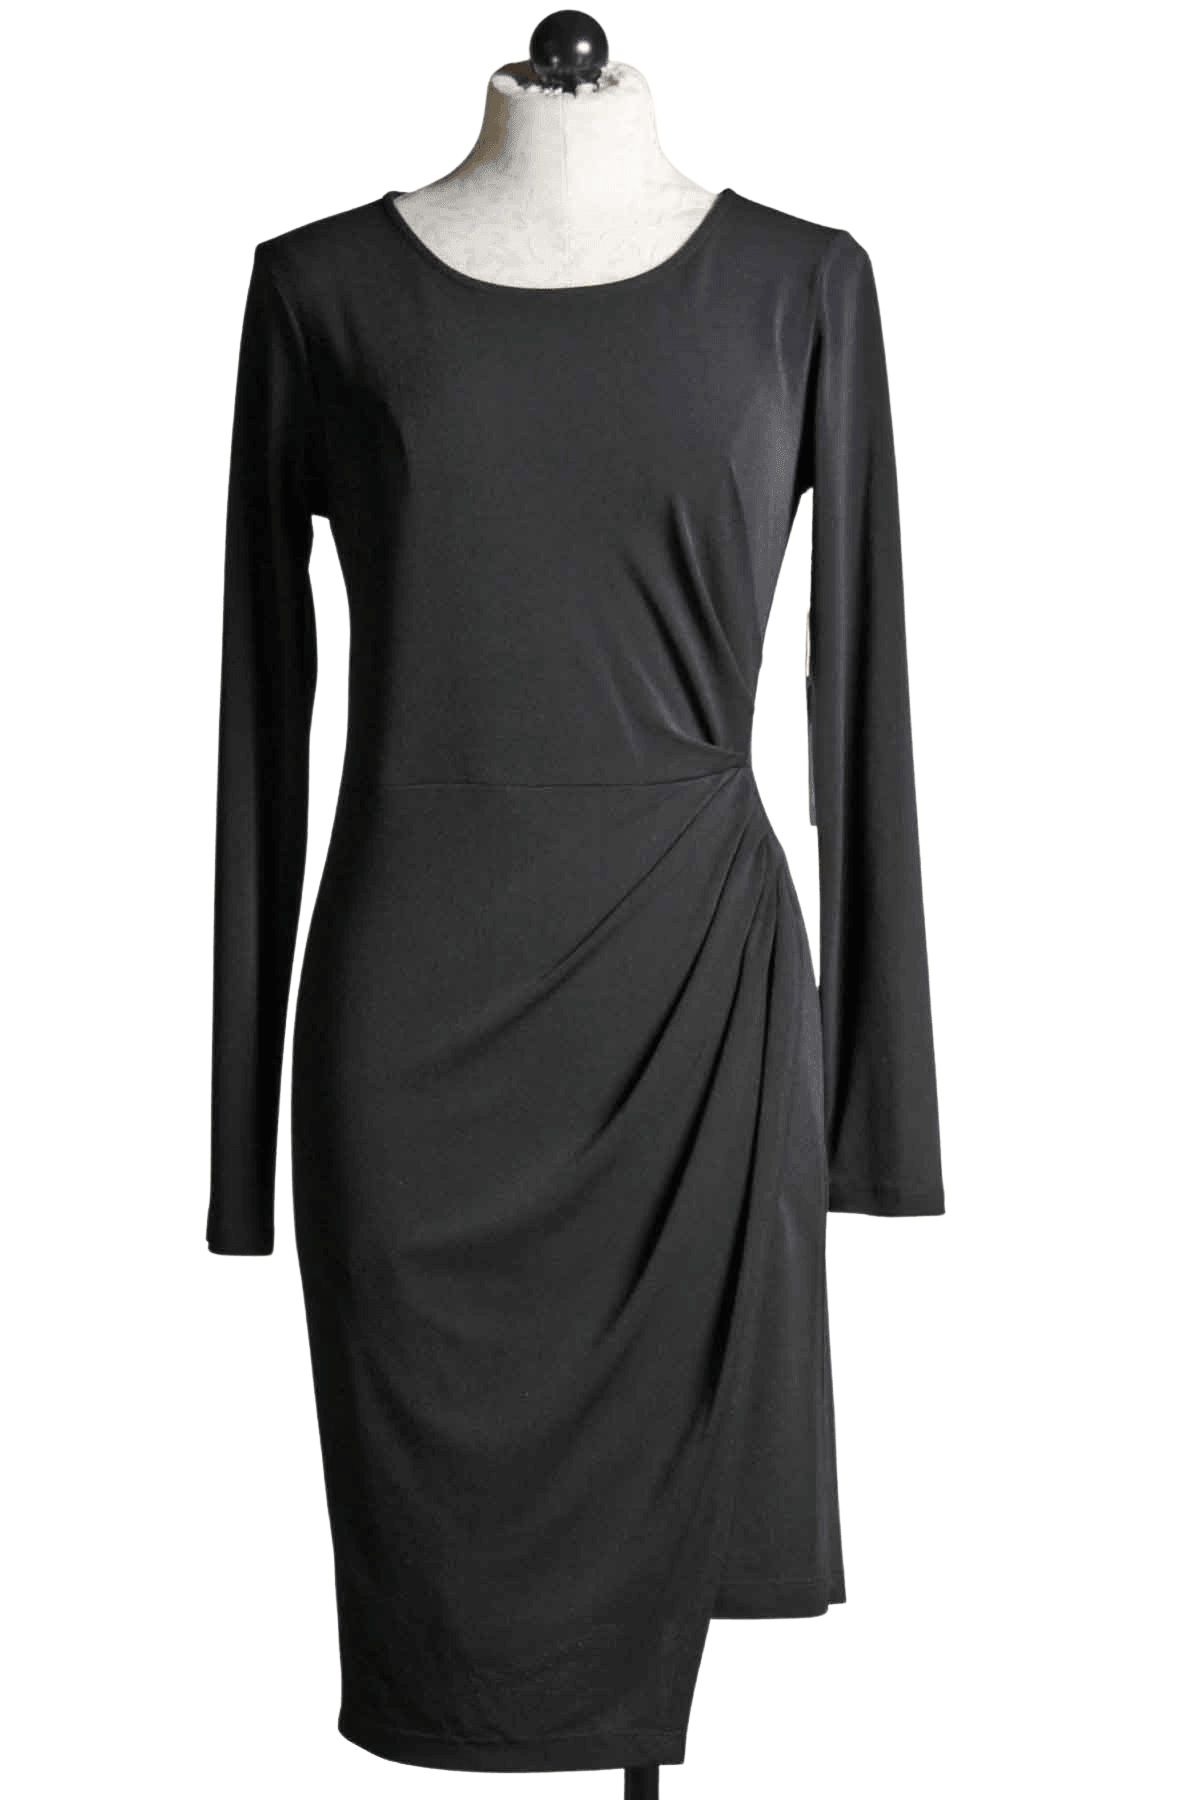 Draped side Crepe dress in black by Fifteen Twenty